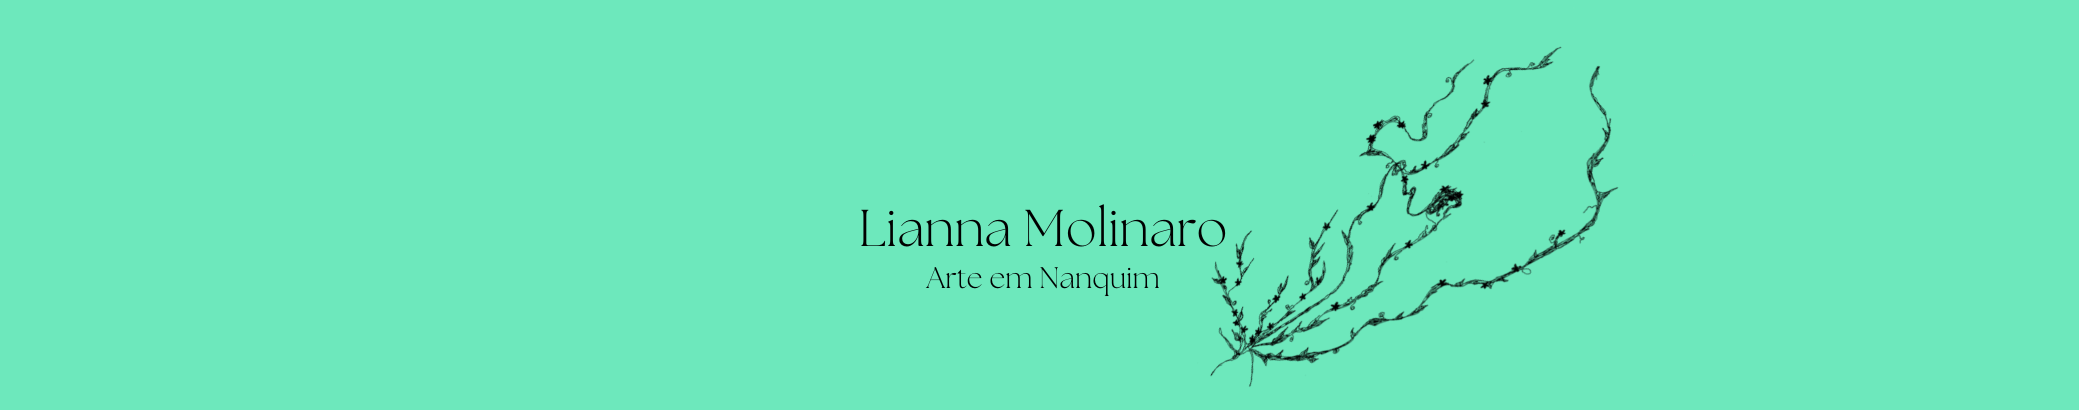 Lianna Molinaro's profile banner